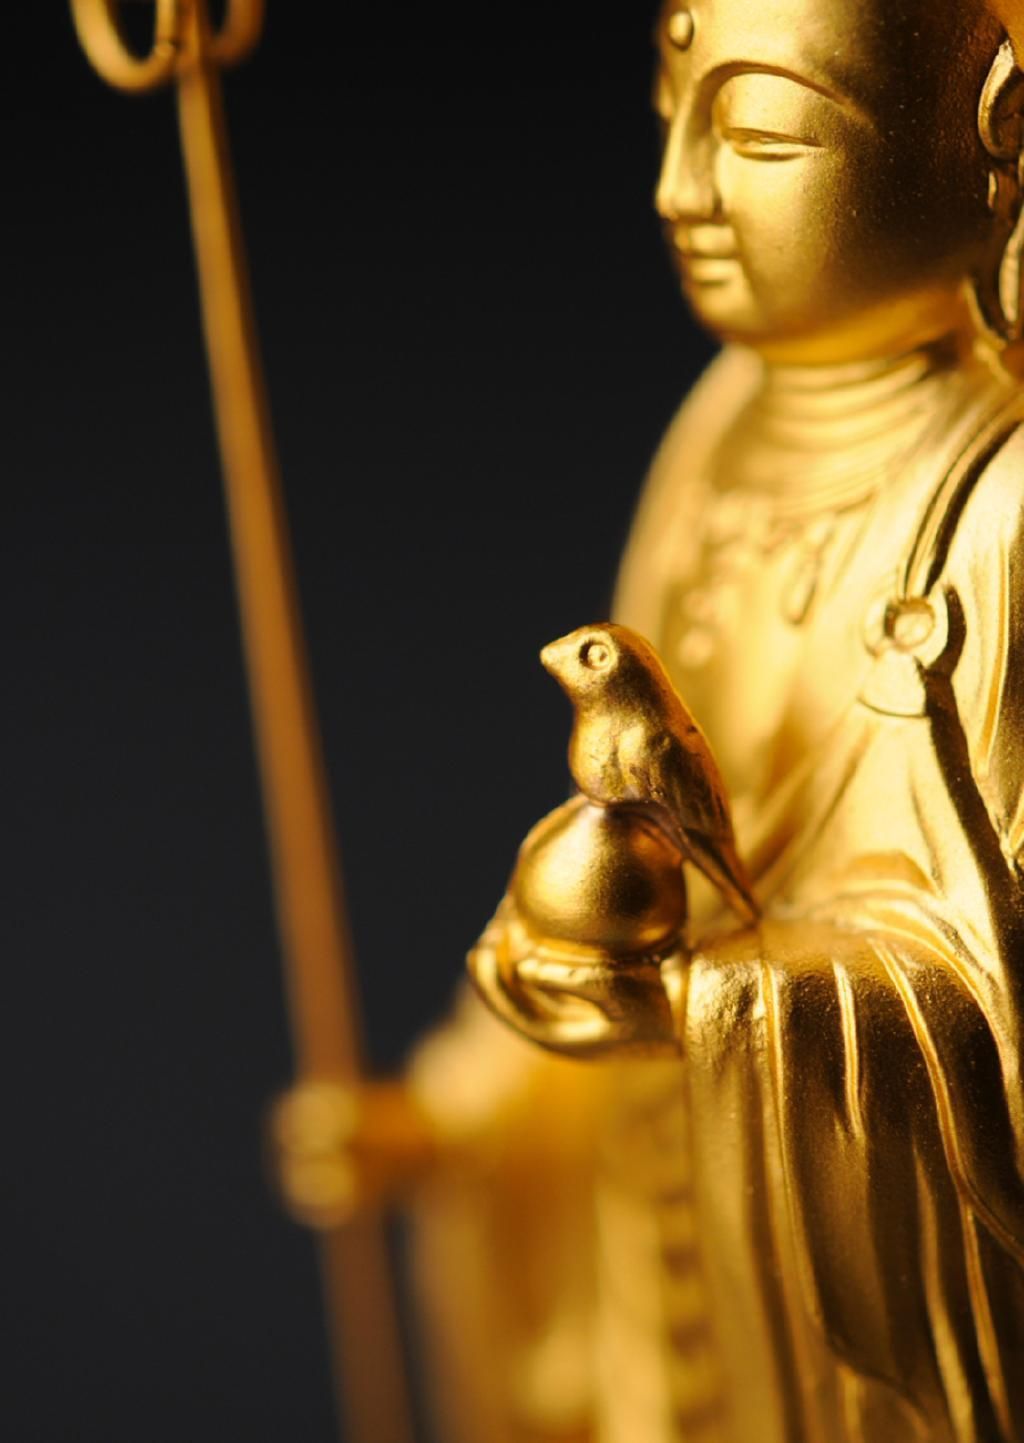 ペット地蔵 - こだま 総高16cm 金色 高岡銅器 仏像 - 仏像ドットコム 